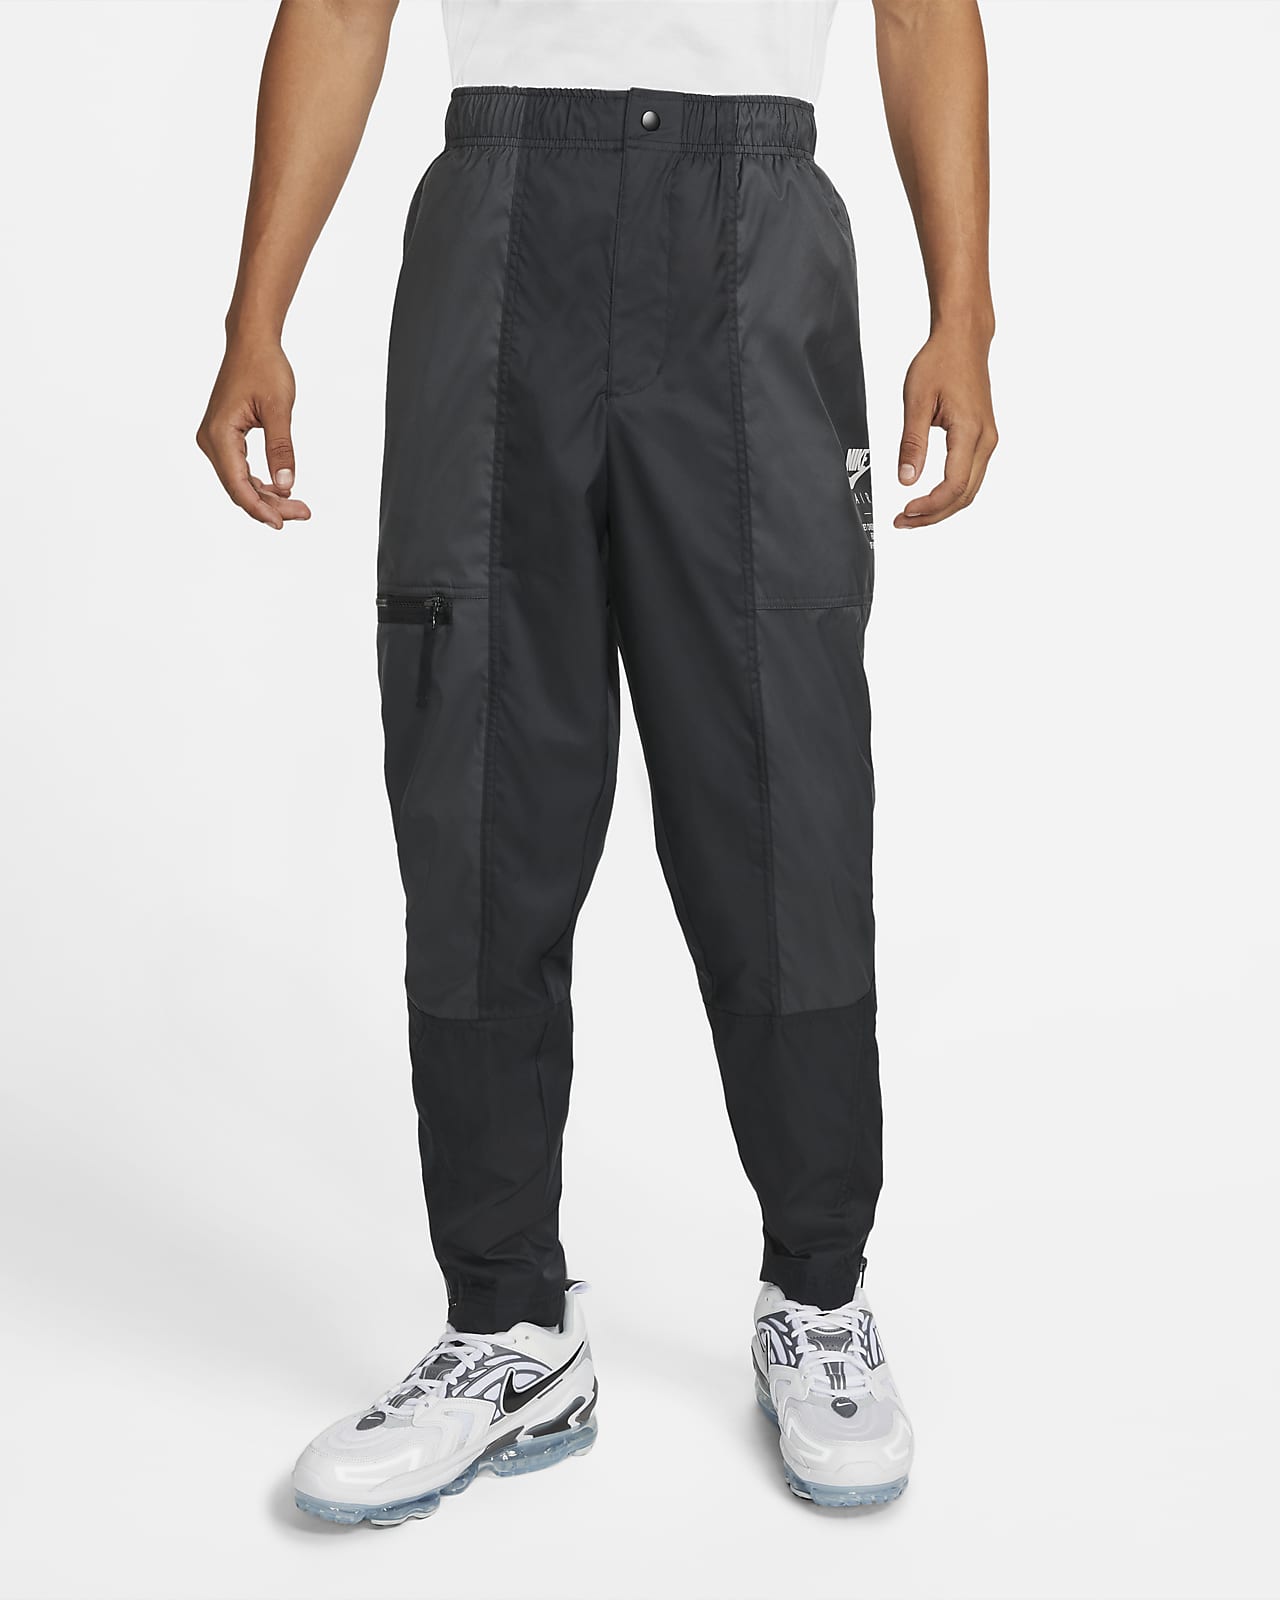 Pants forrados de tejido Woven para hombre Nike Air